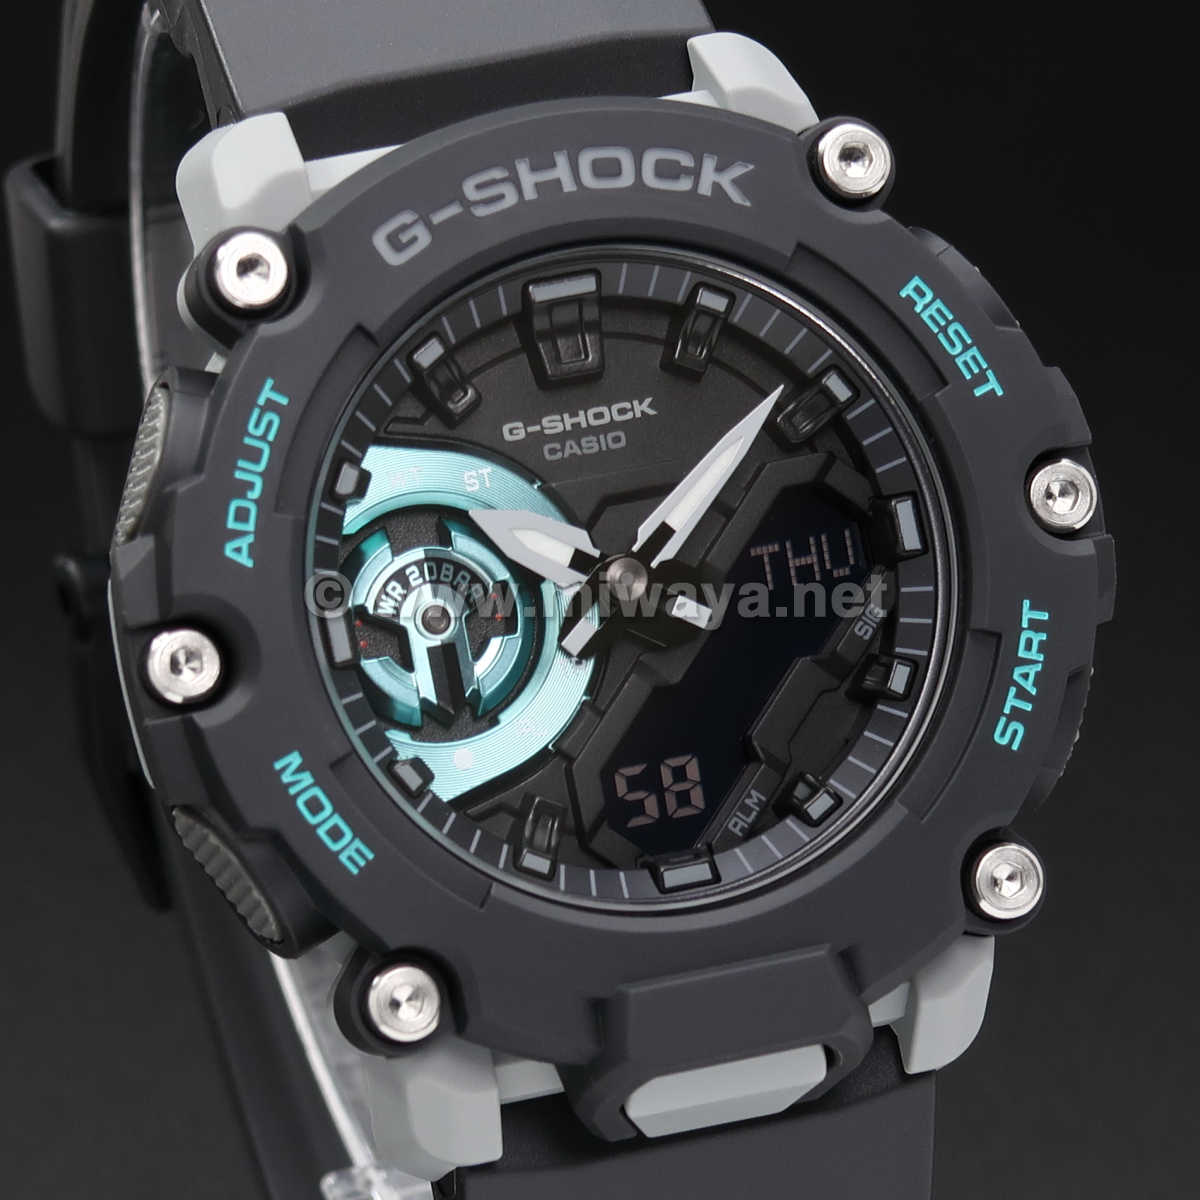 祝開店！大放出セール開催中 腕時計(デジタル) g-shock GA-2200M-1AJF